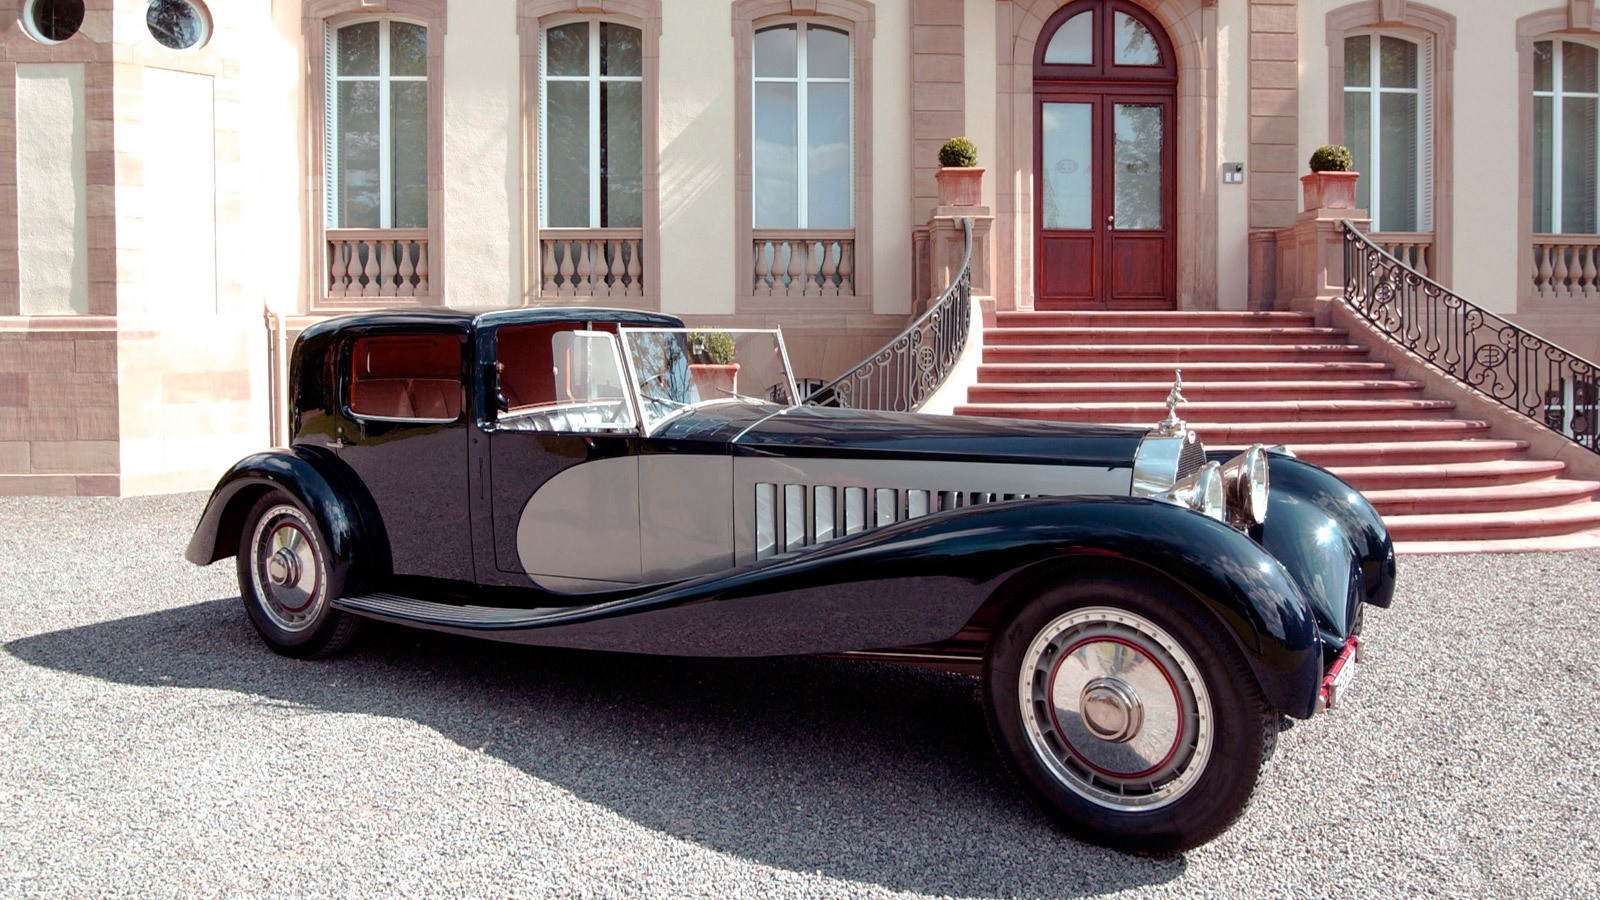 Σπάνια και ακριβά αυτοκίνητα: Bugatti Royale Type 41 του 1926-1931